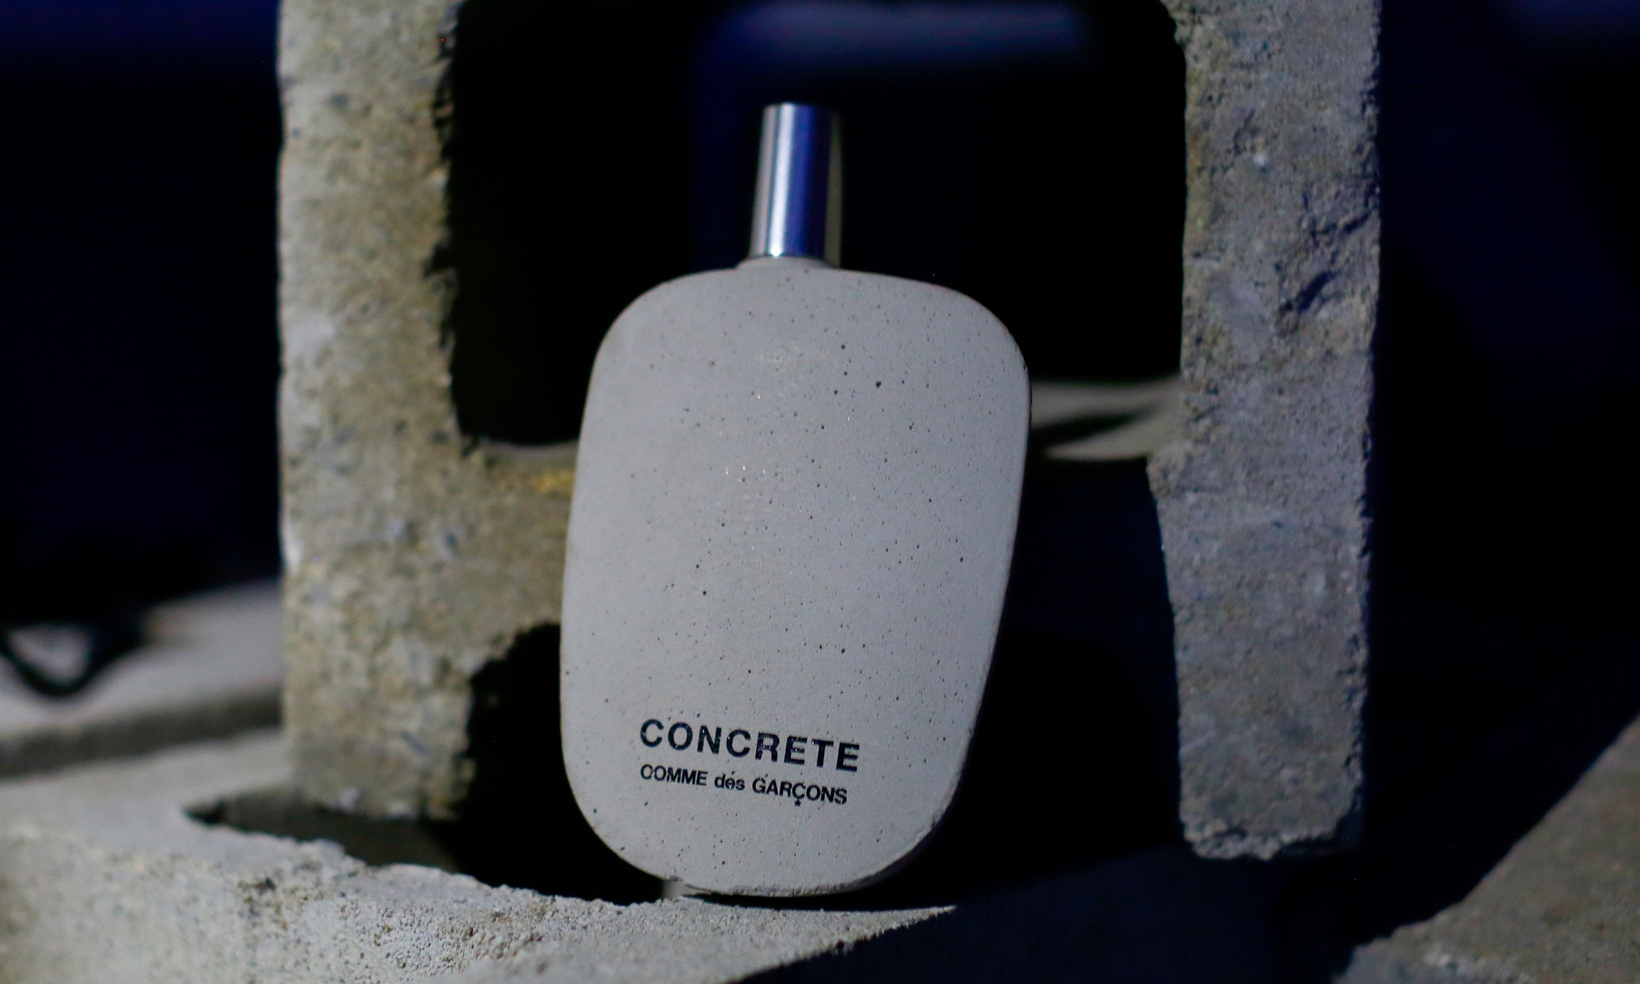 COMME des GARÇON 推出 CONCRETE 香水向纽约致敬